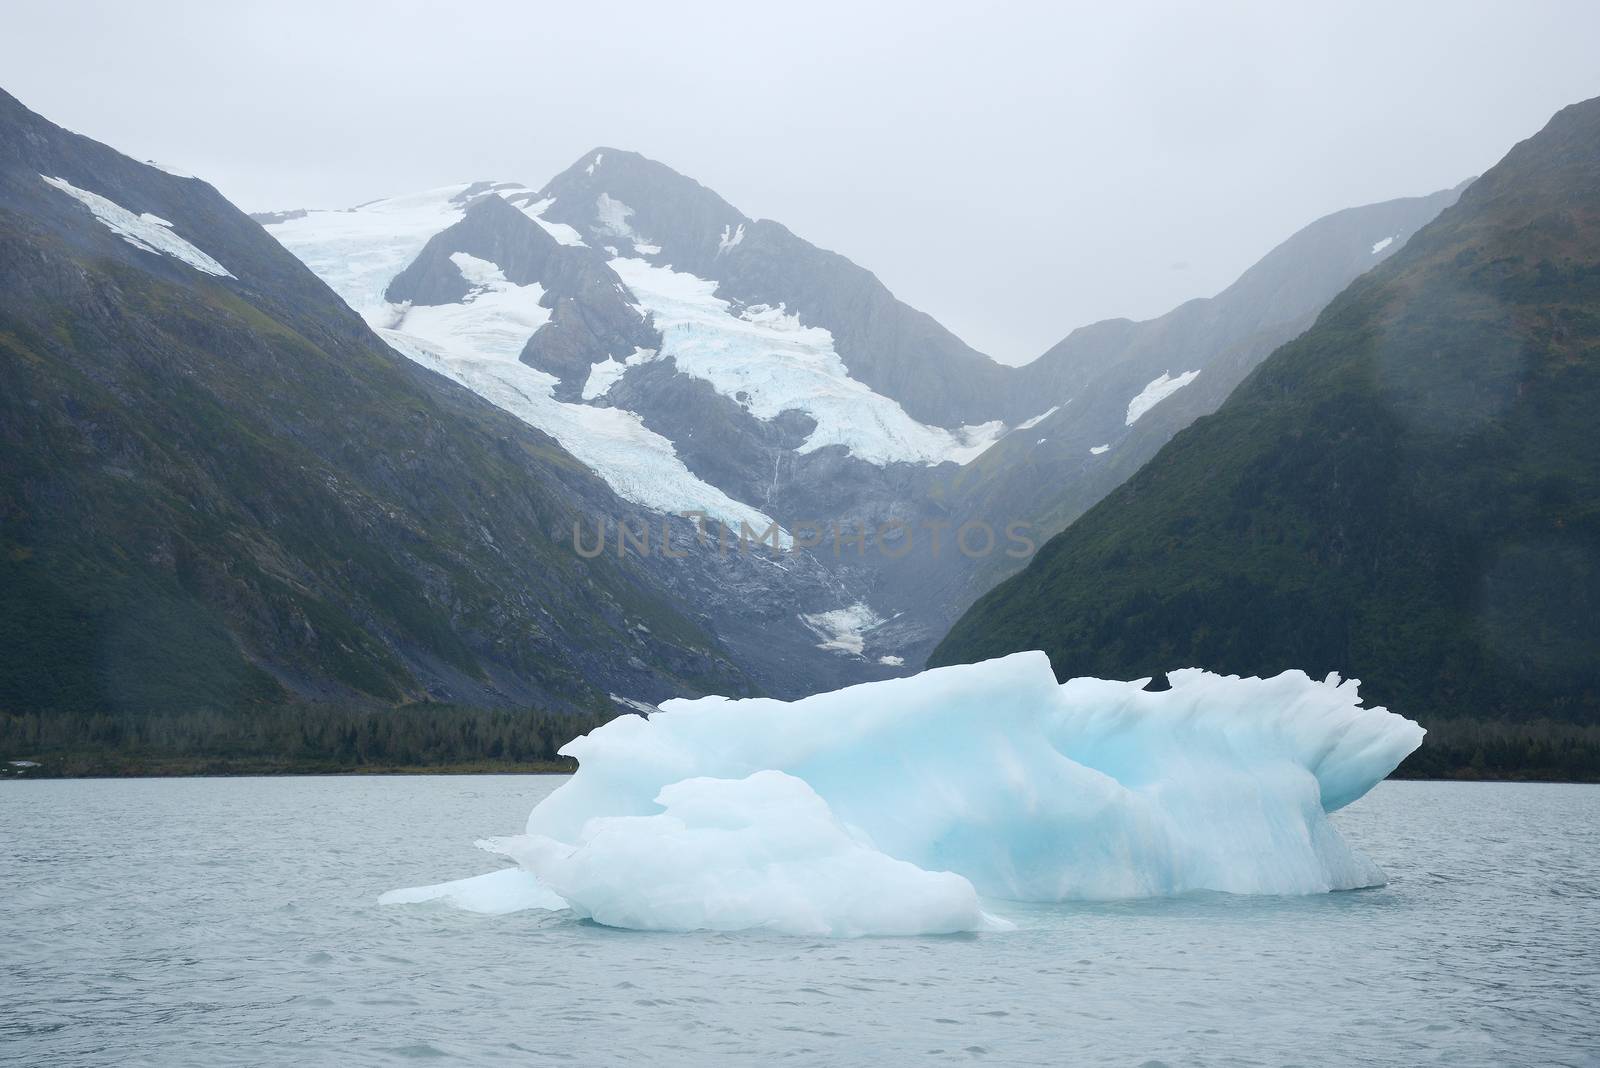 blue iceberg from portage glacier in alaska
